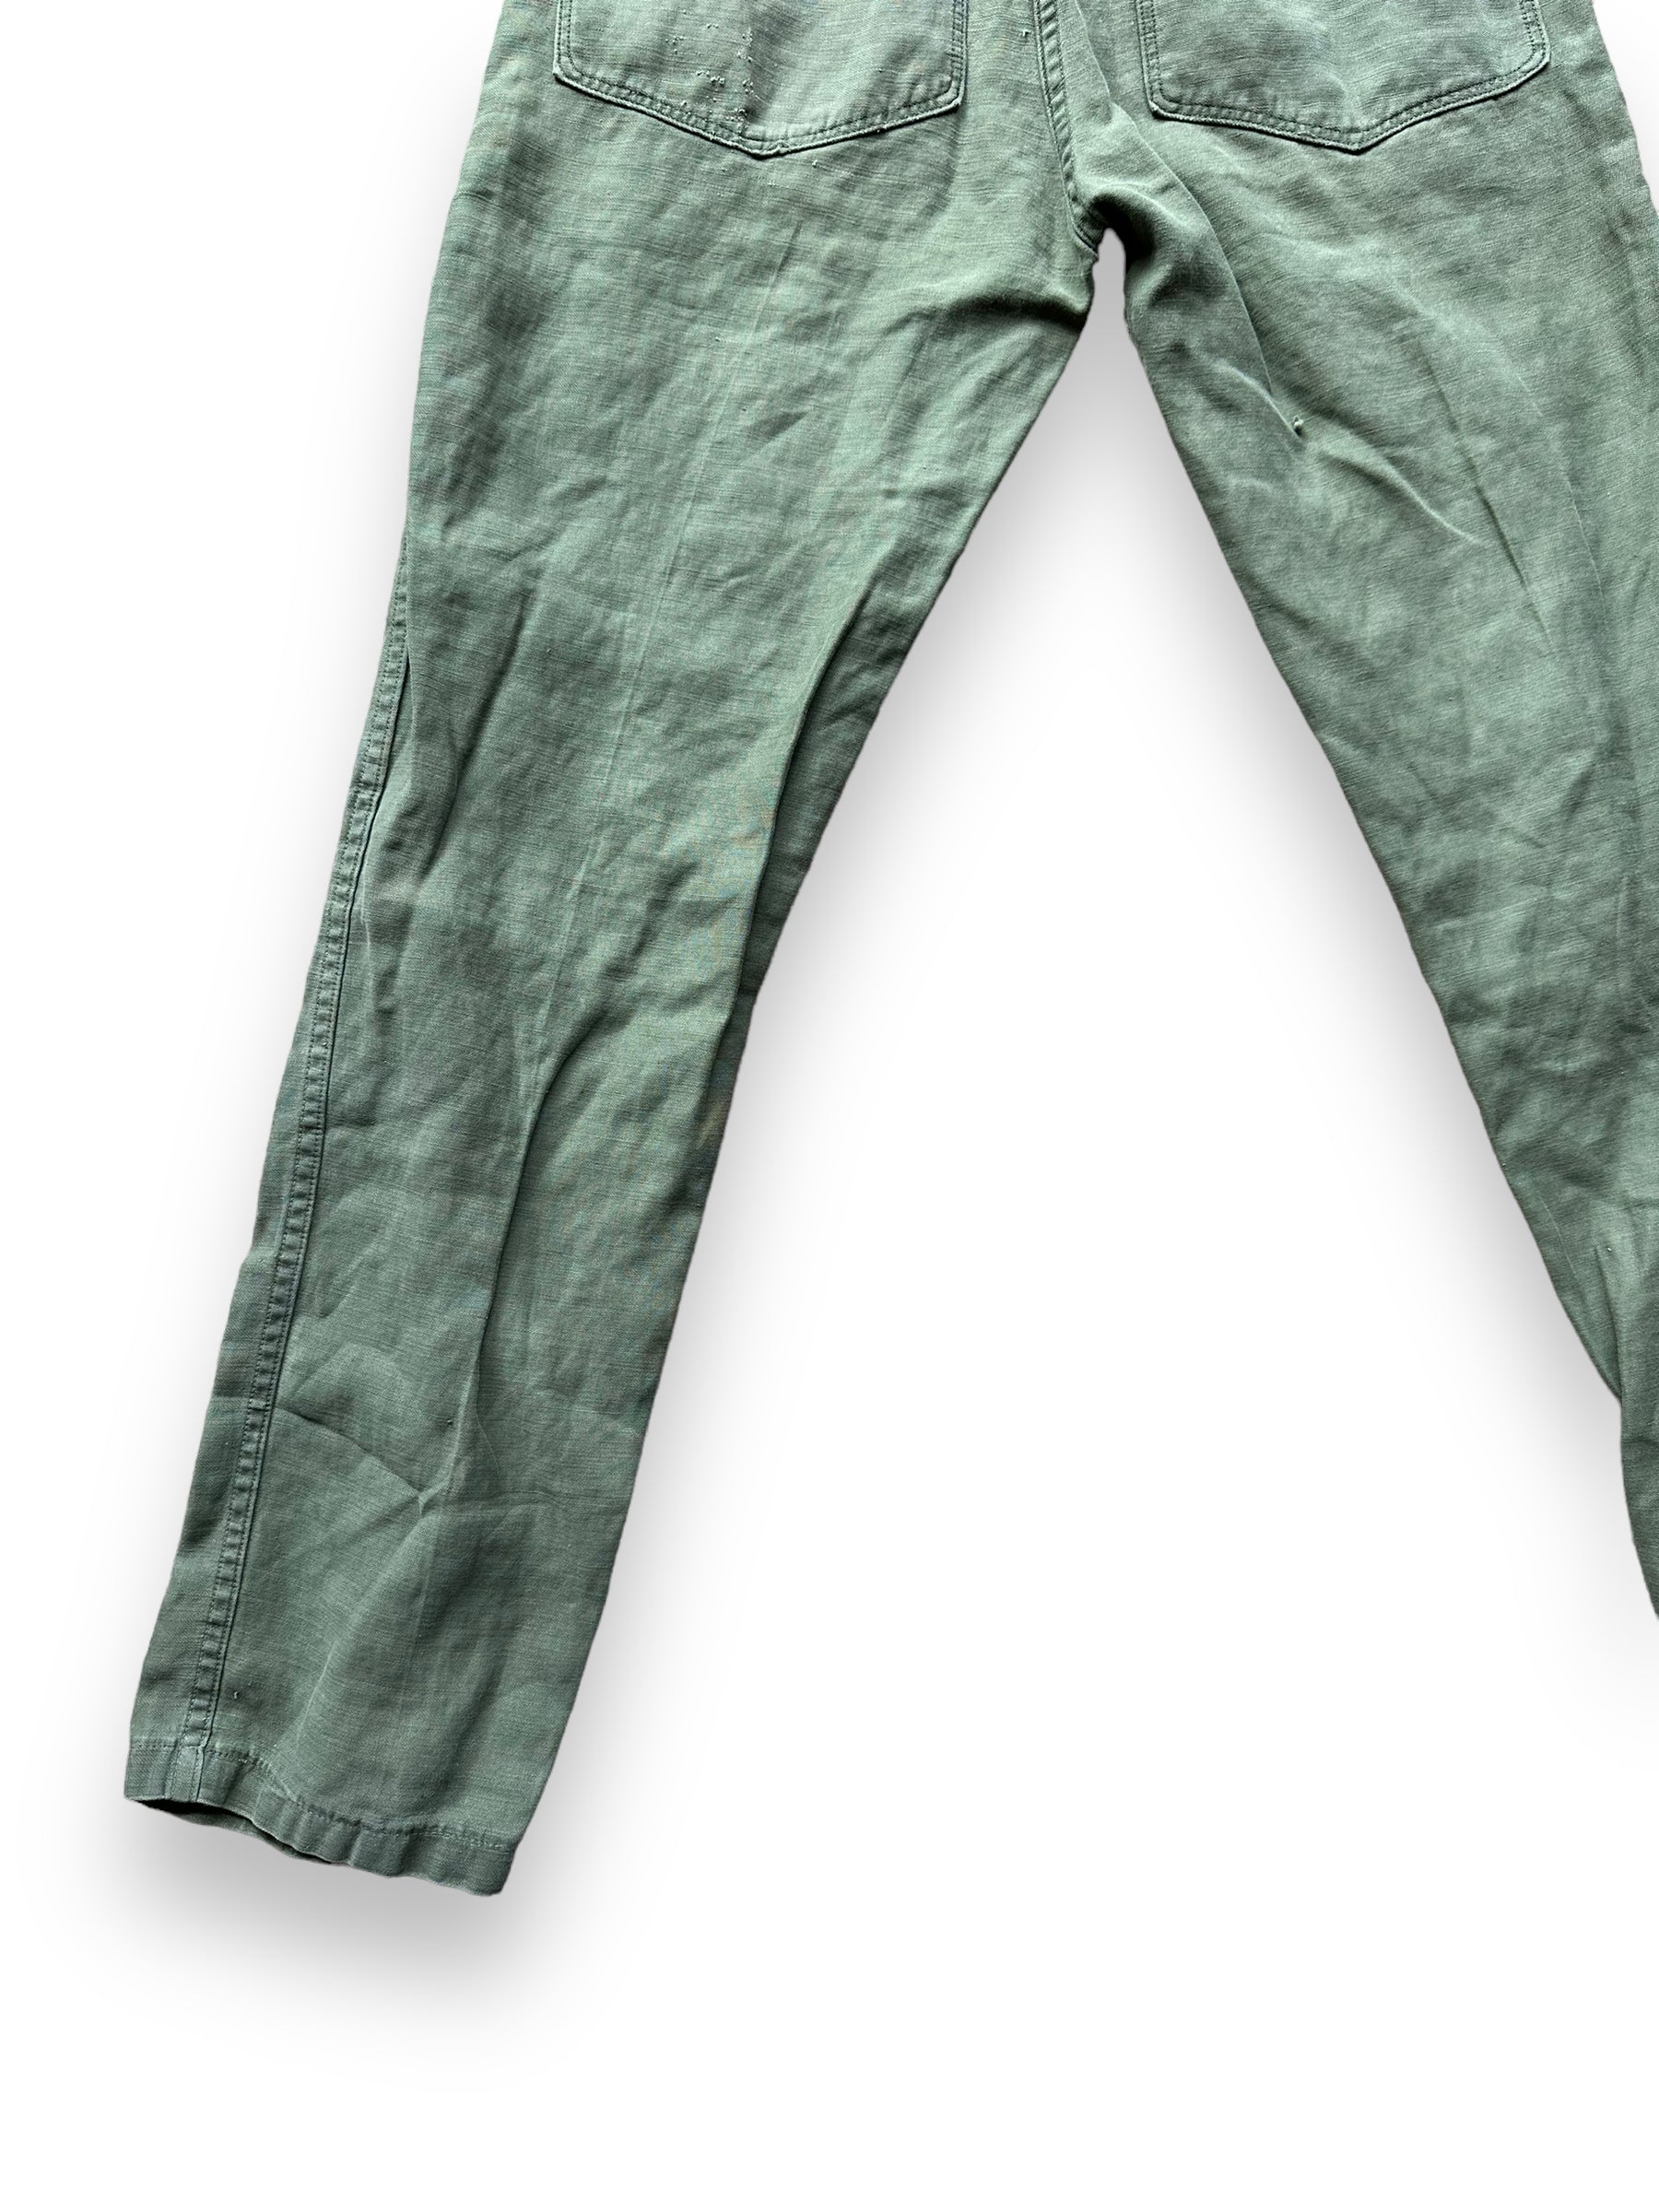 Left Rear View of Vintage Sateen OG-107's W30 L32.5 | Vintage Viet Nam Era Baker Pants Seattle | Barn Owl Vintage Workwear